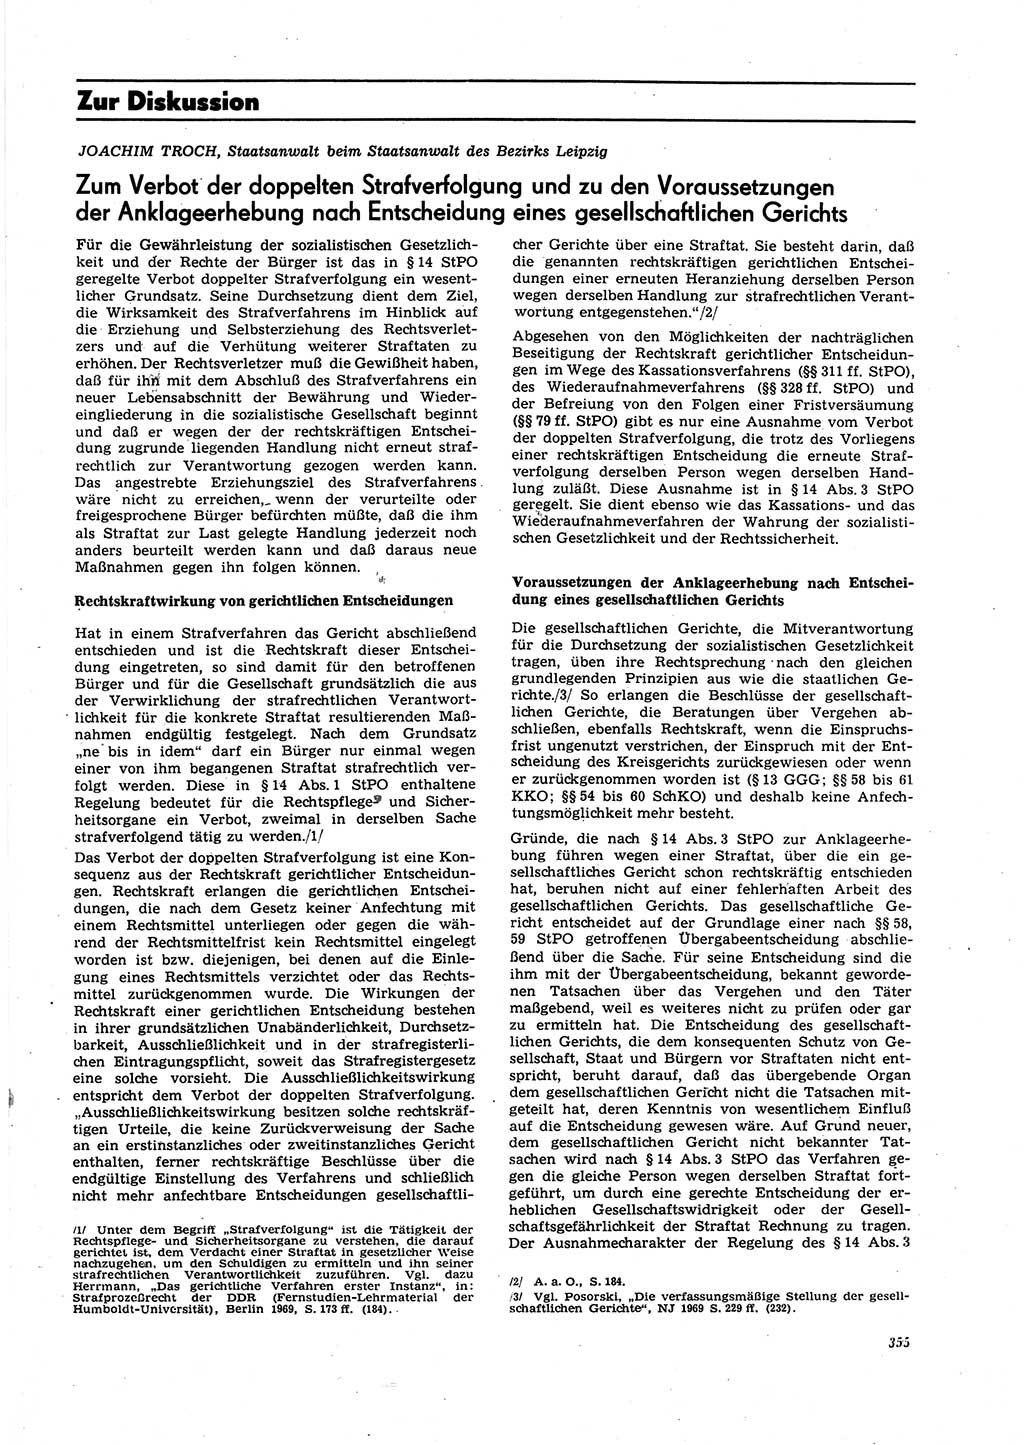 Neue Justiz (NJ), Zeitschrift für Recht und Rechtswissenschaft [Deutsche Demokratische Republik (DDR)], 27. Jahrgang 1973, Seite 355 (NJ DDR 1973, S. 355)